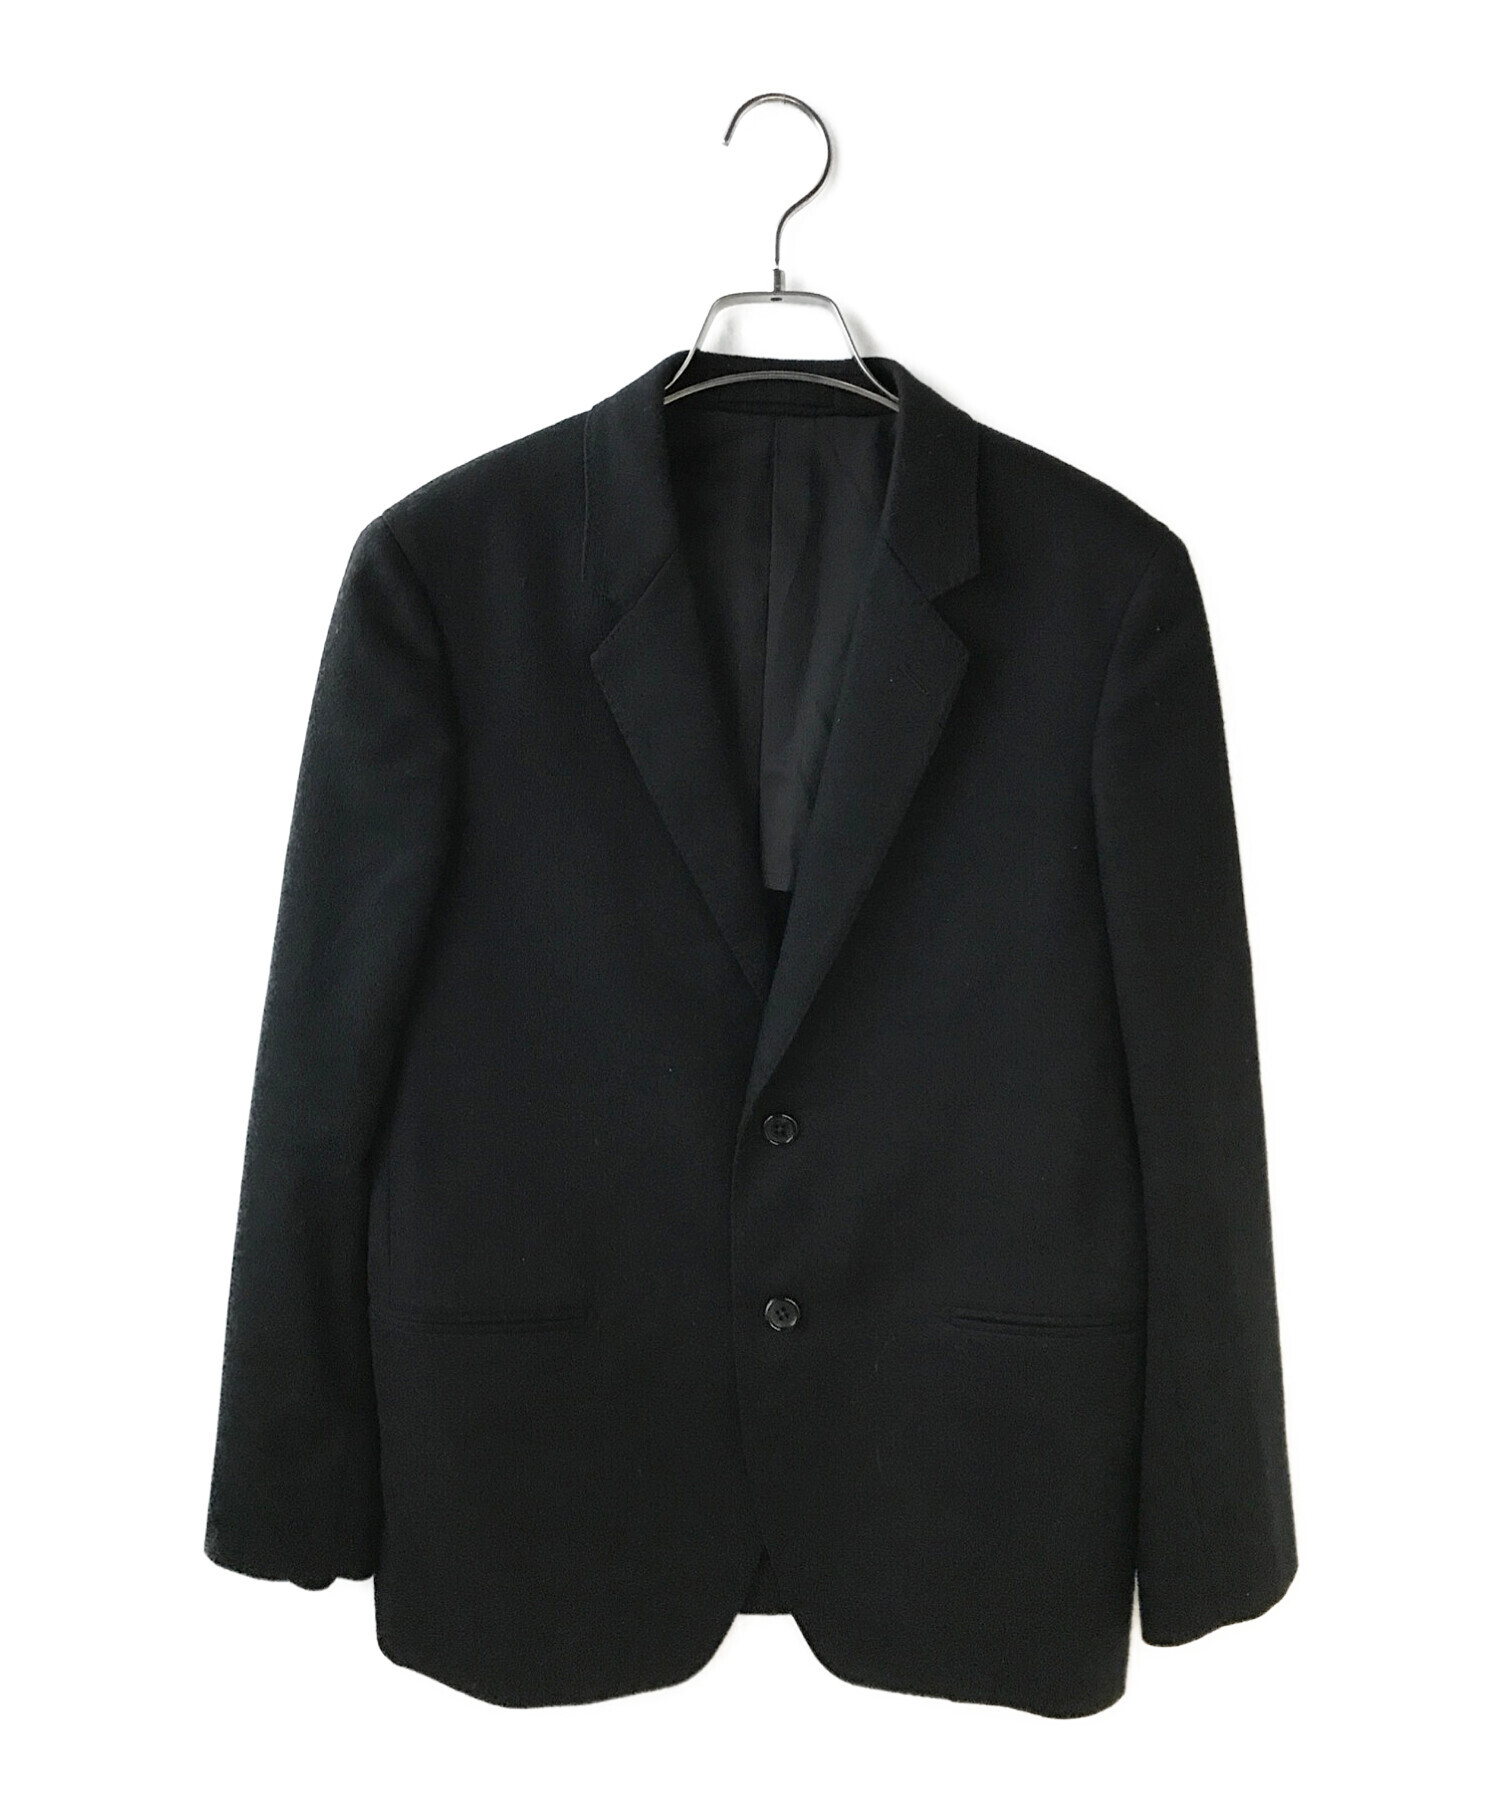 マーガレットハウエル 2Bジャケット袖丈63cm - テーラードジャケット